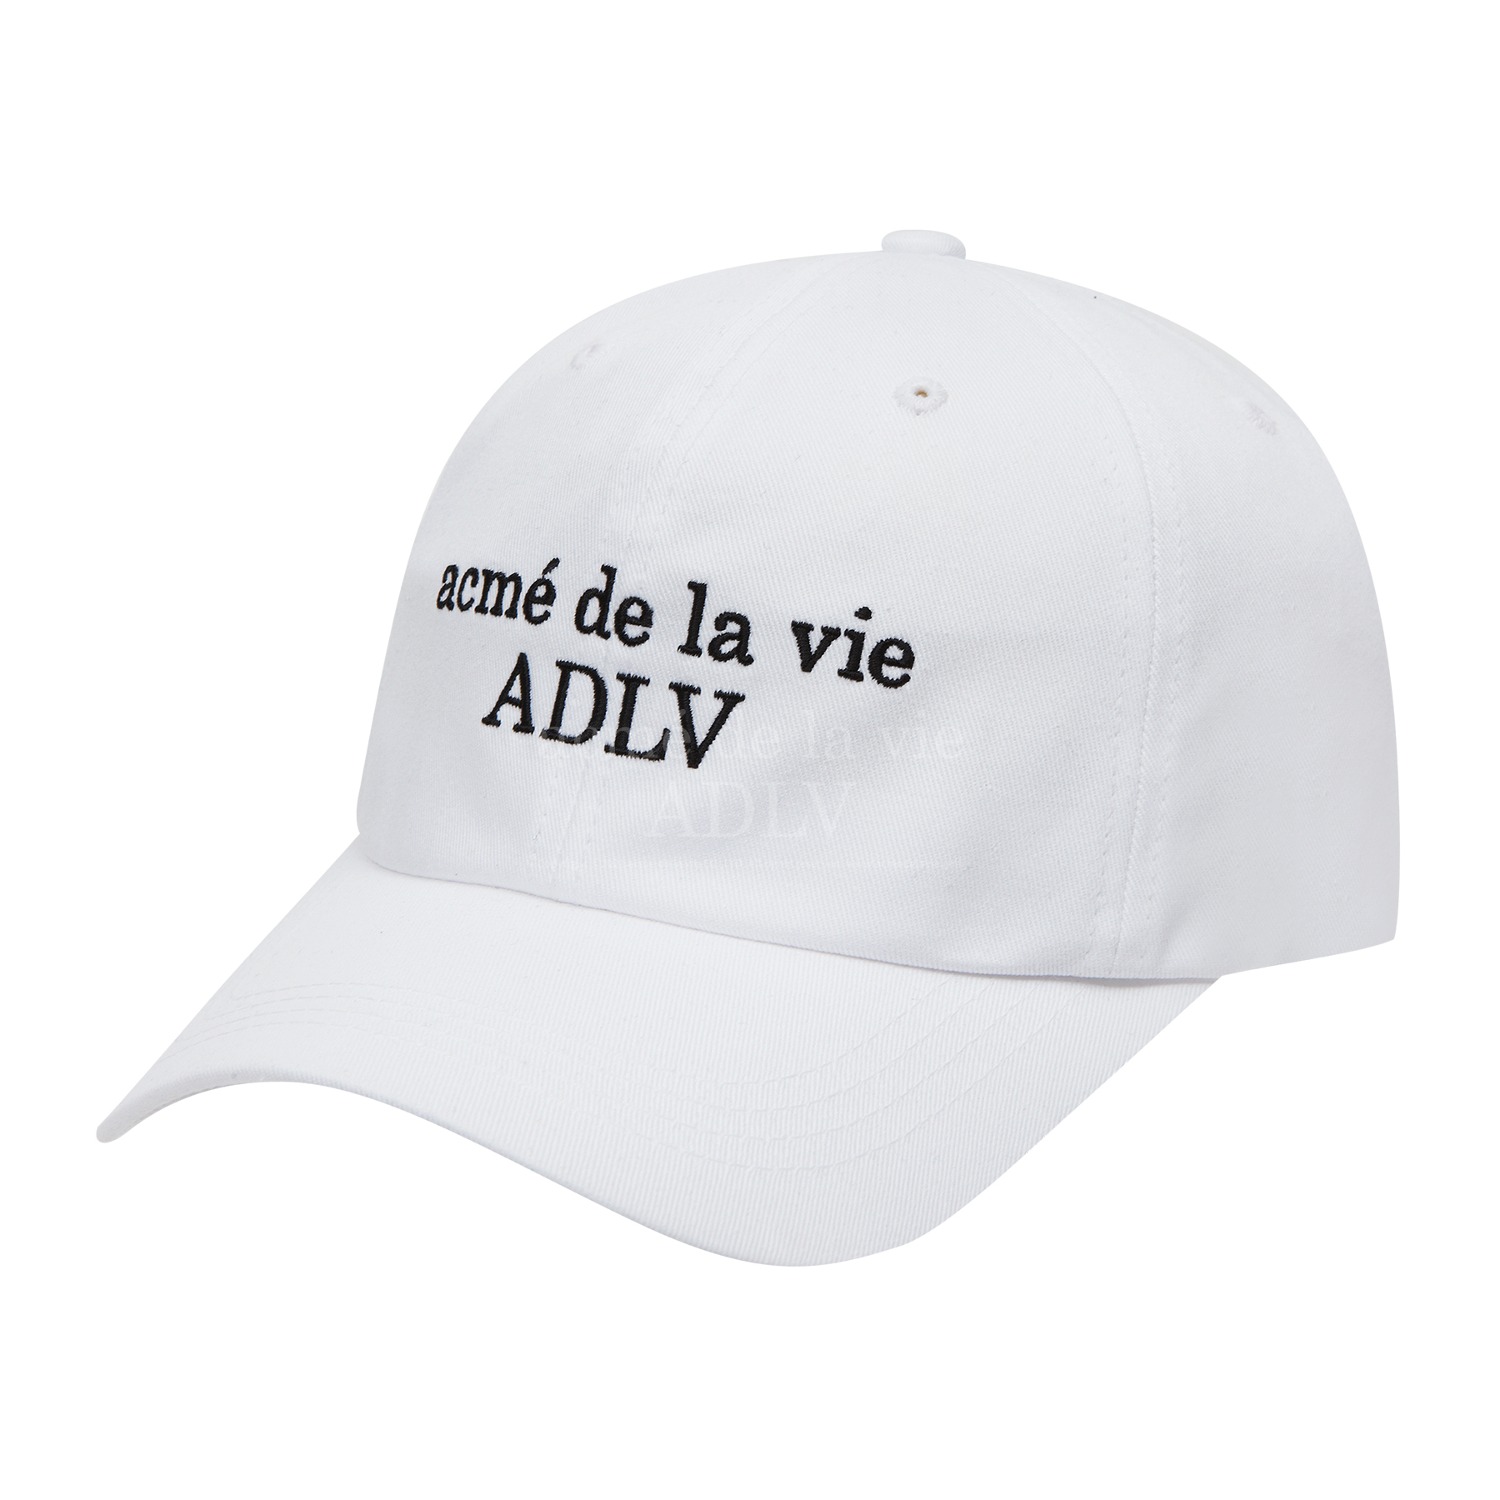 [아크메드라비] ADLV BASIC BALL CAP WHITE